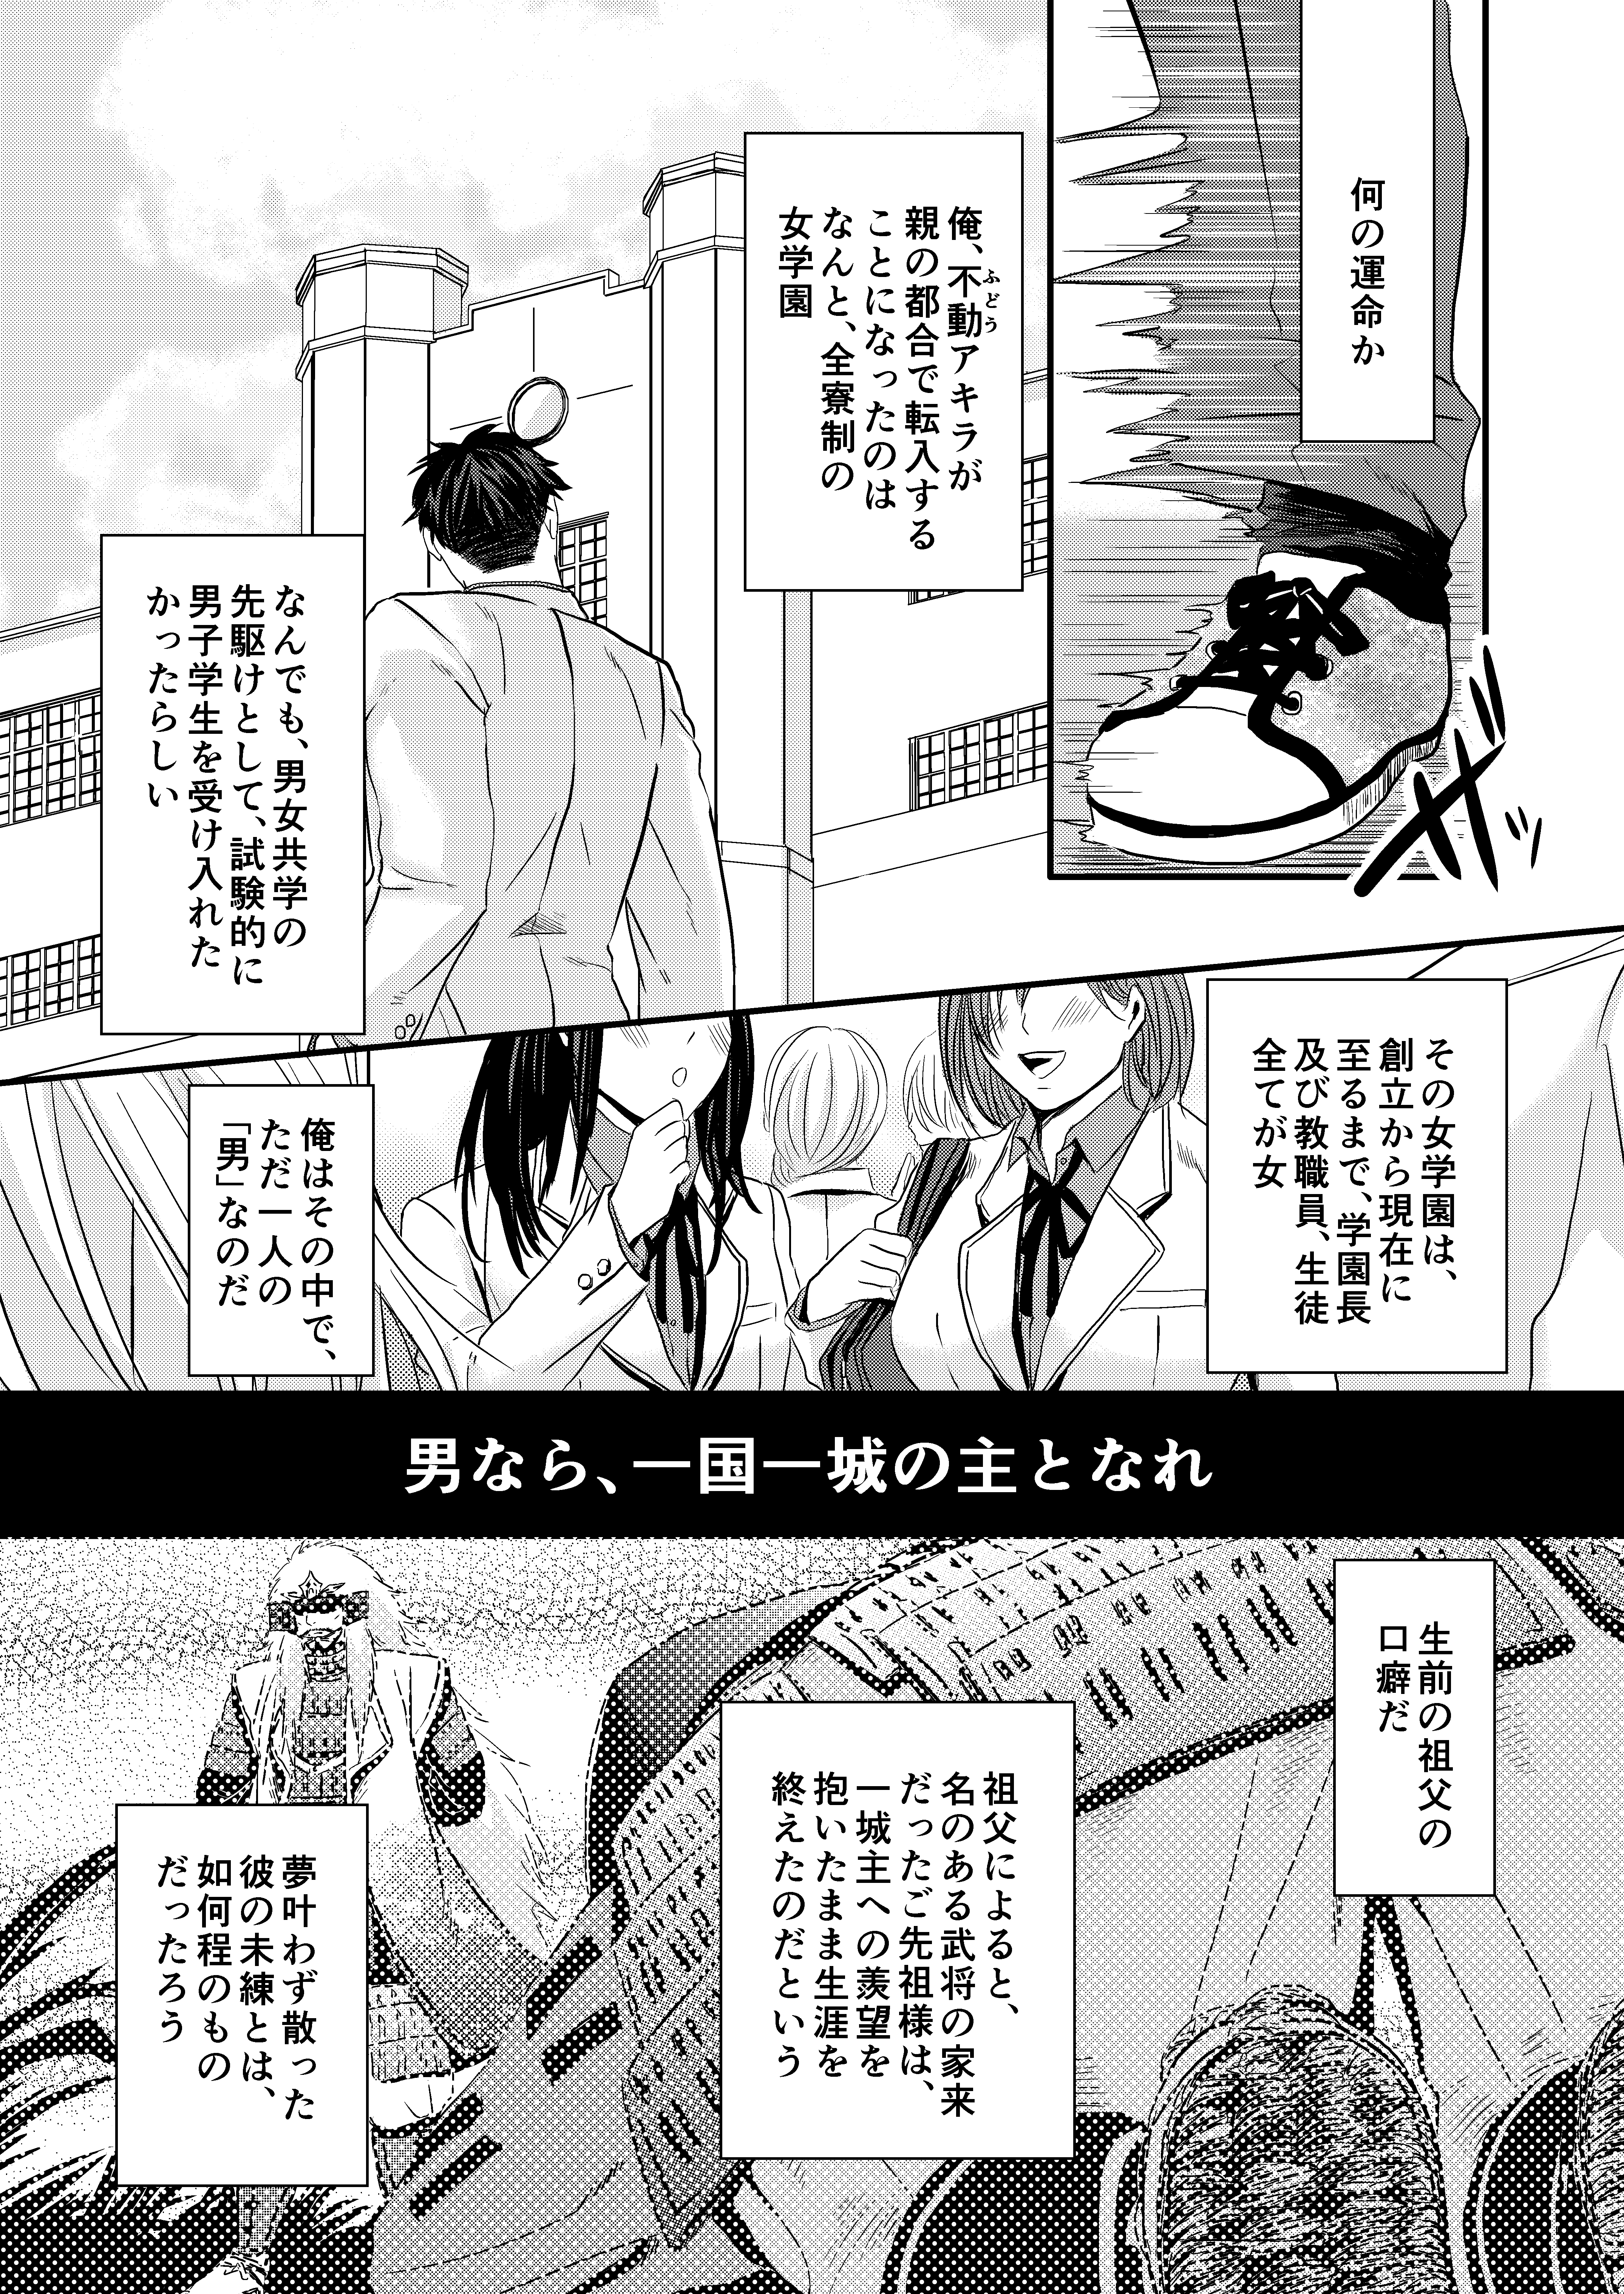 [在线本子][日文漫画] 女学园堕 [36P]在线观看